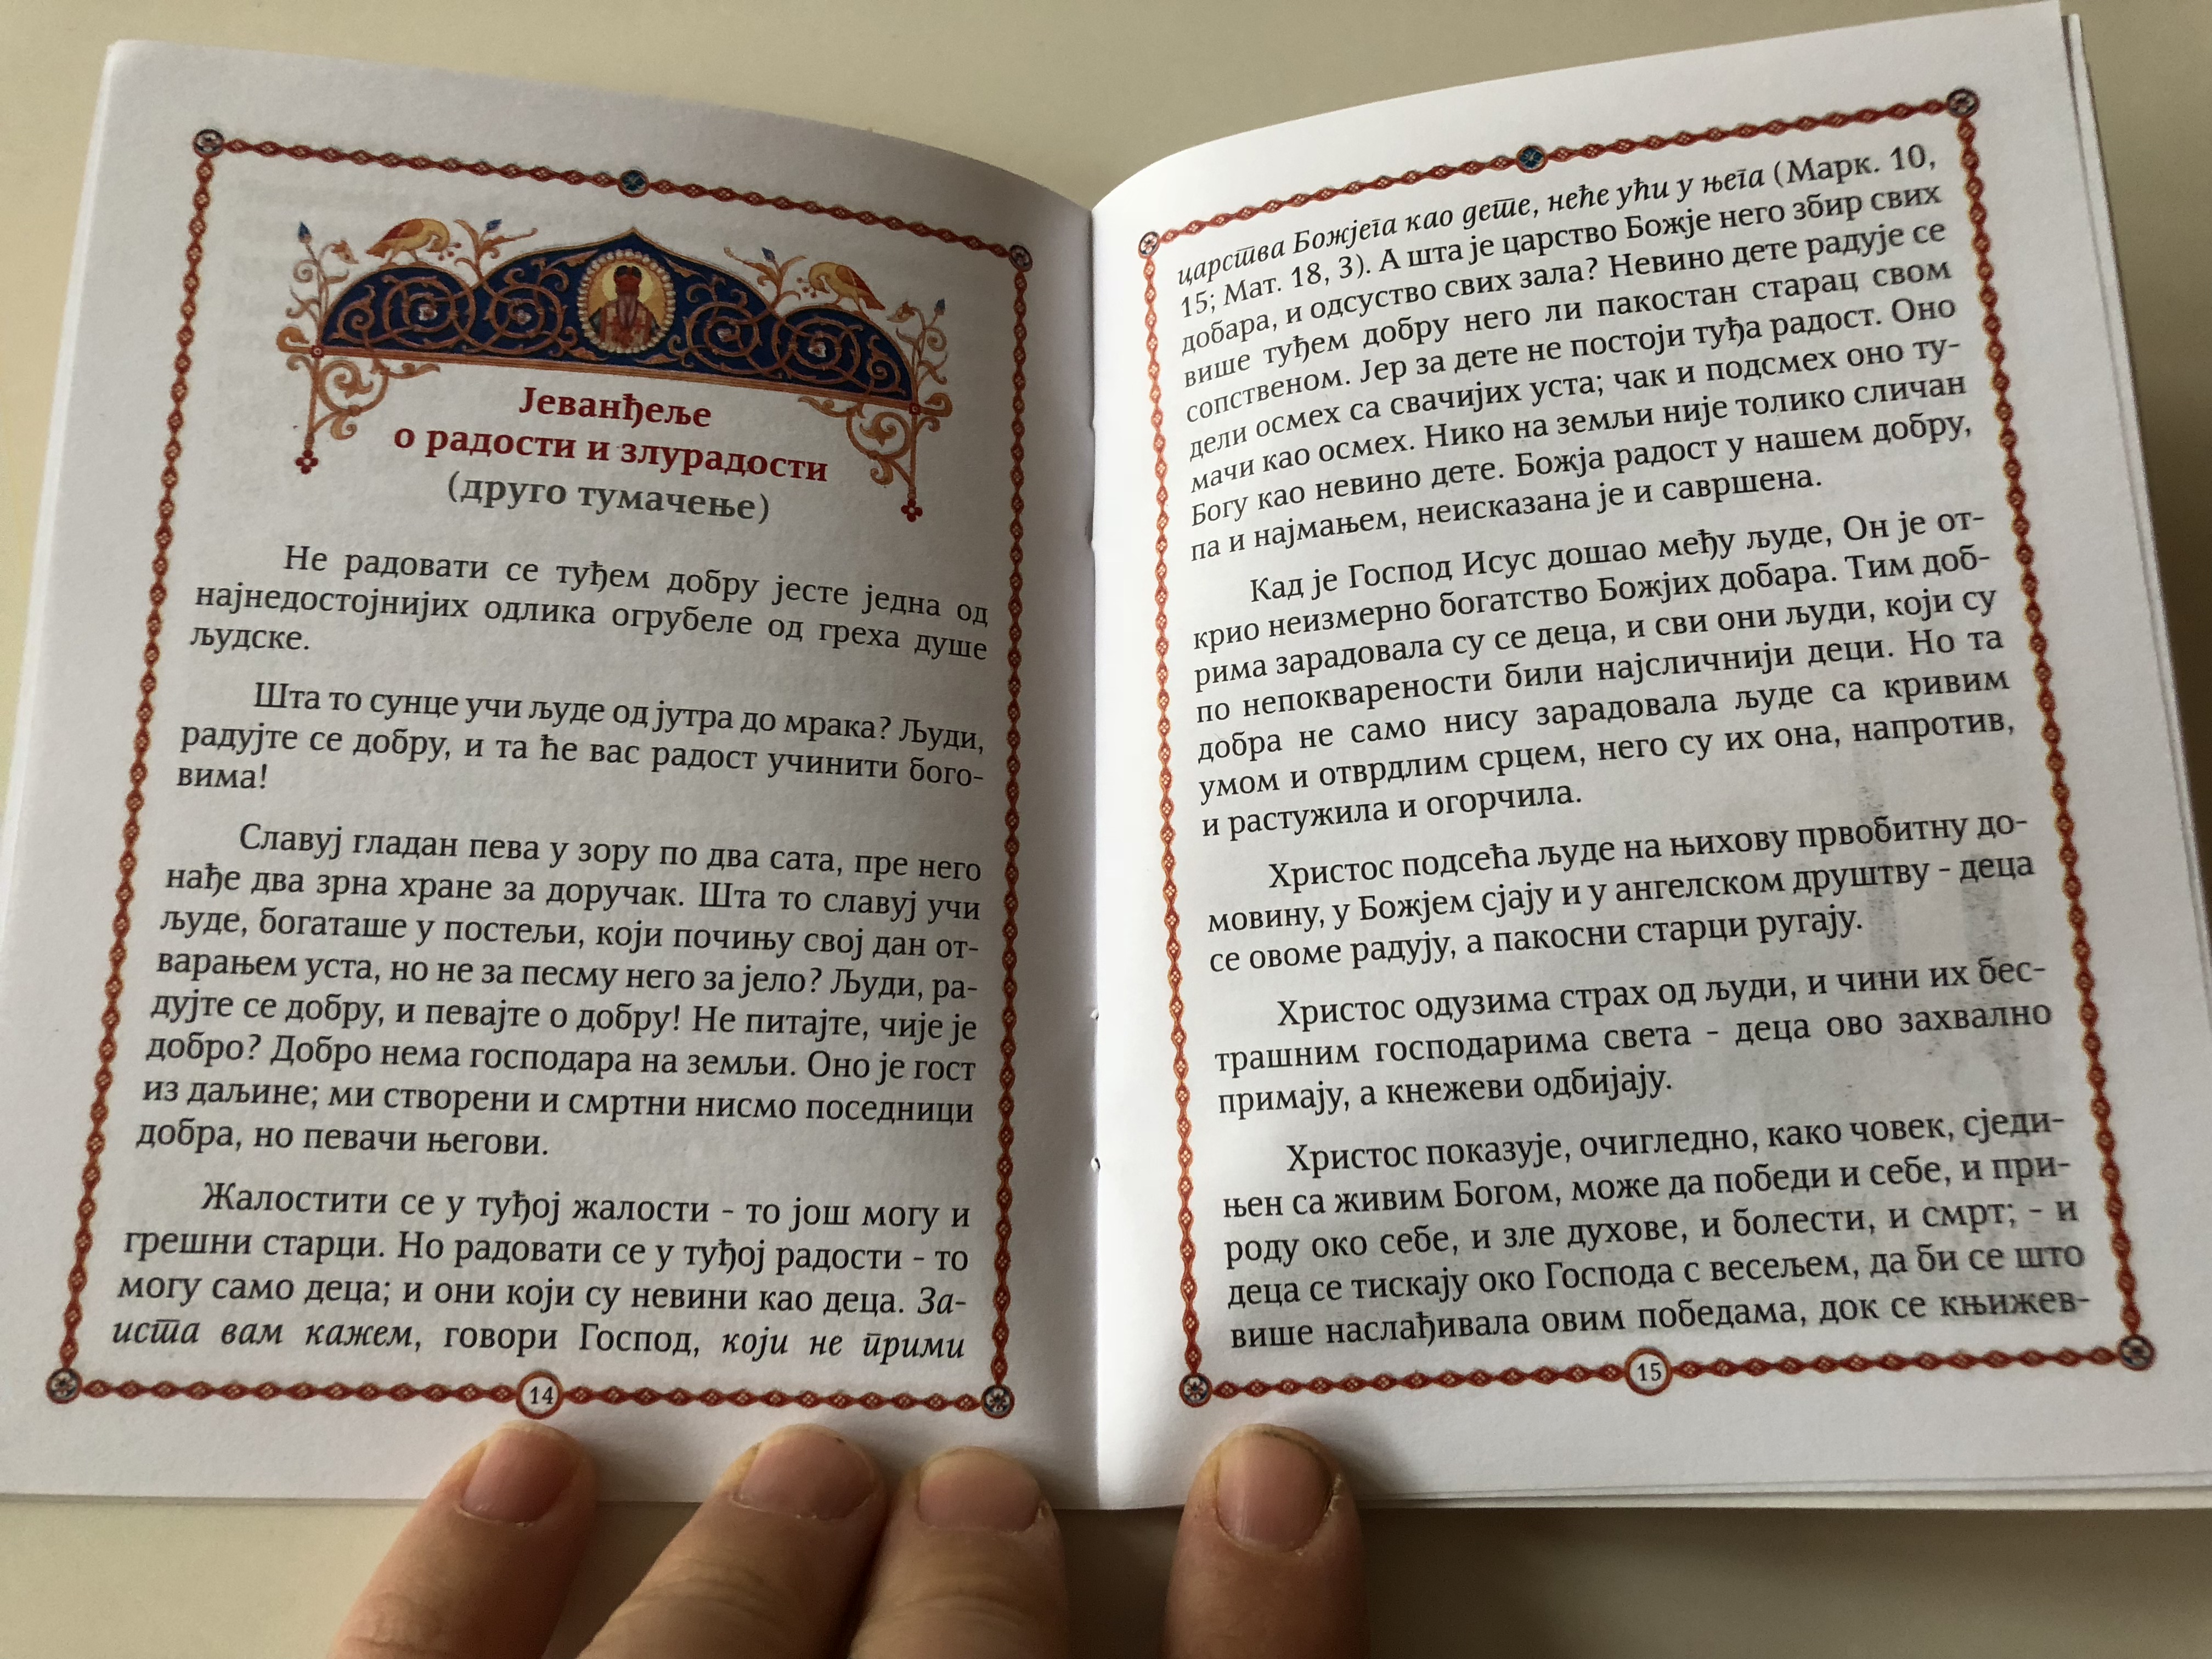 serbian-the-wonder-in-capernaum-orthodox-storybook-4-.jpg